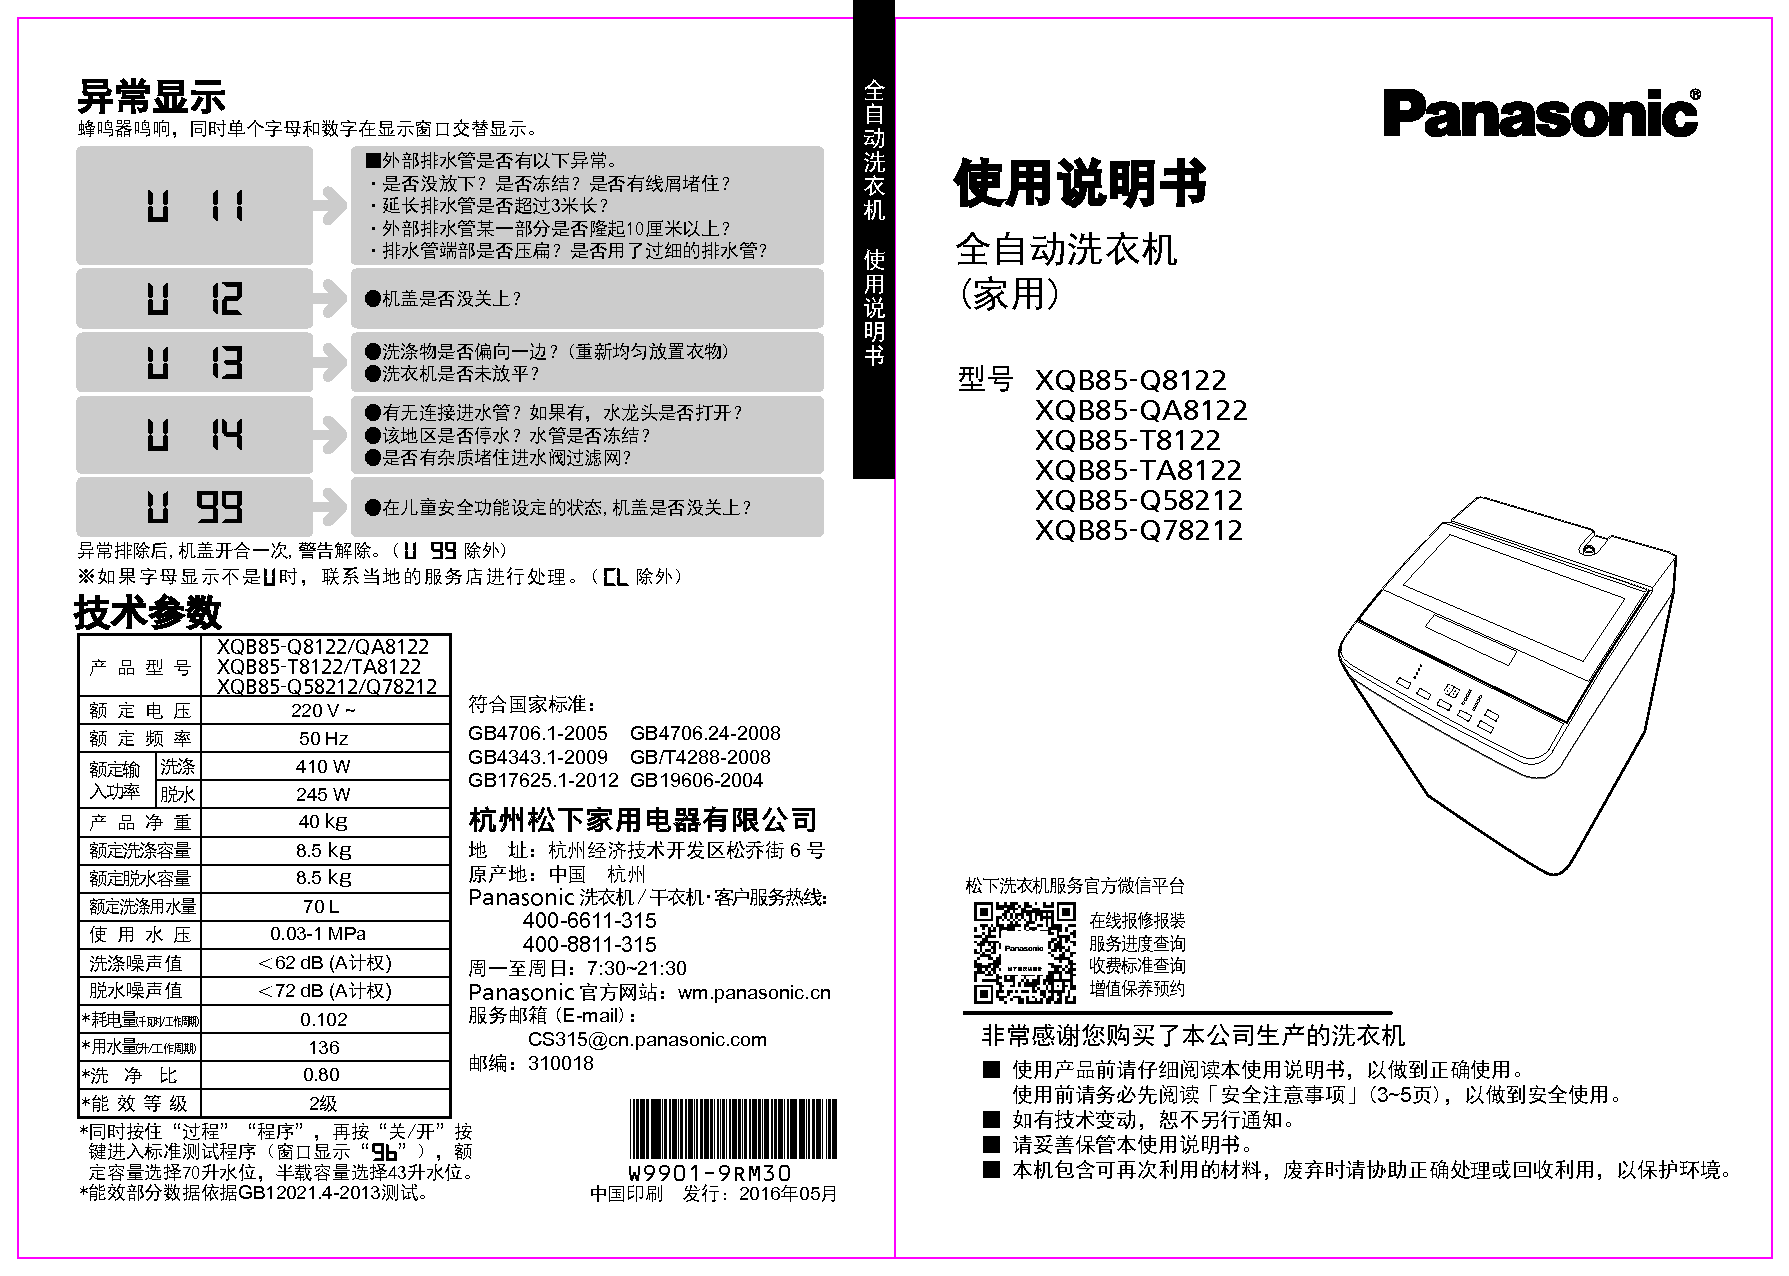 松下 Panasonic XQB85-Q58212 使用说明书 封面